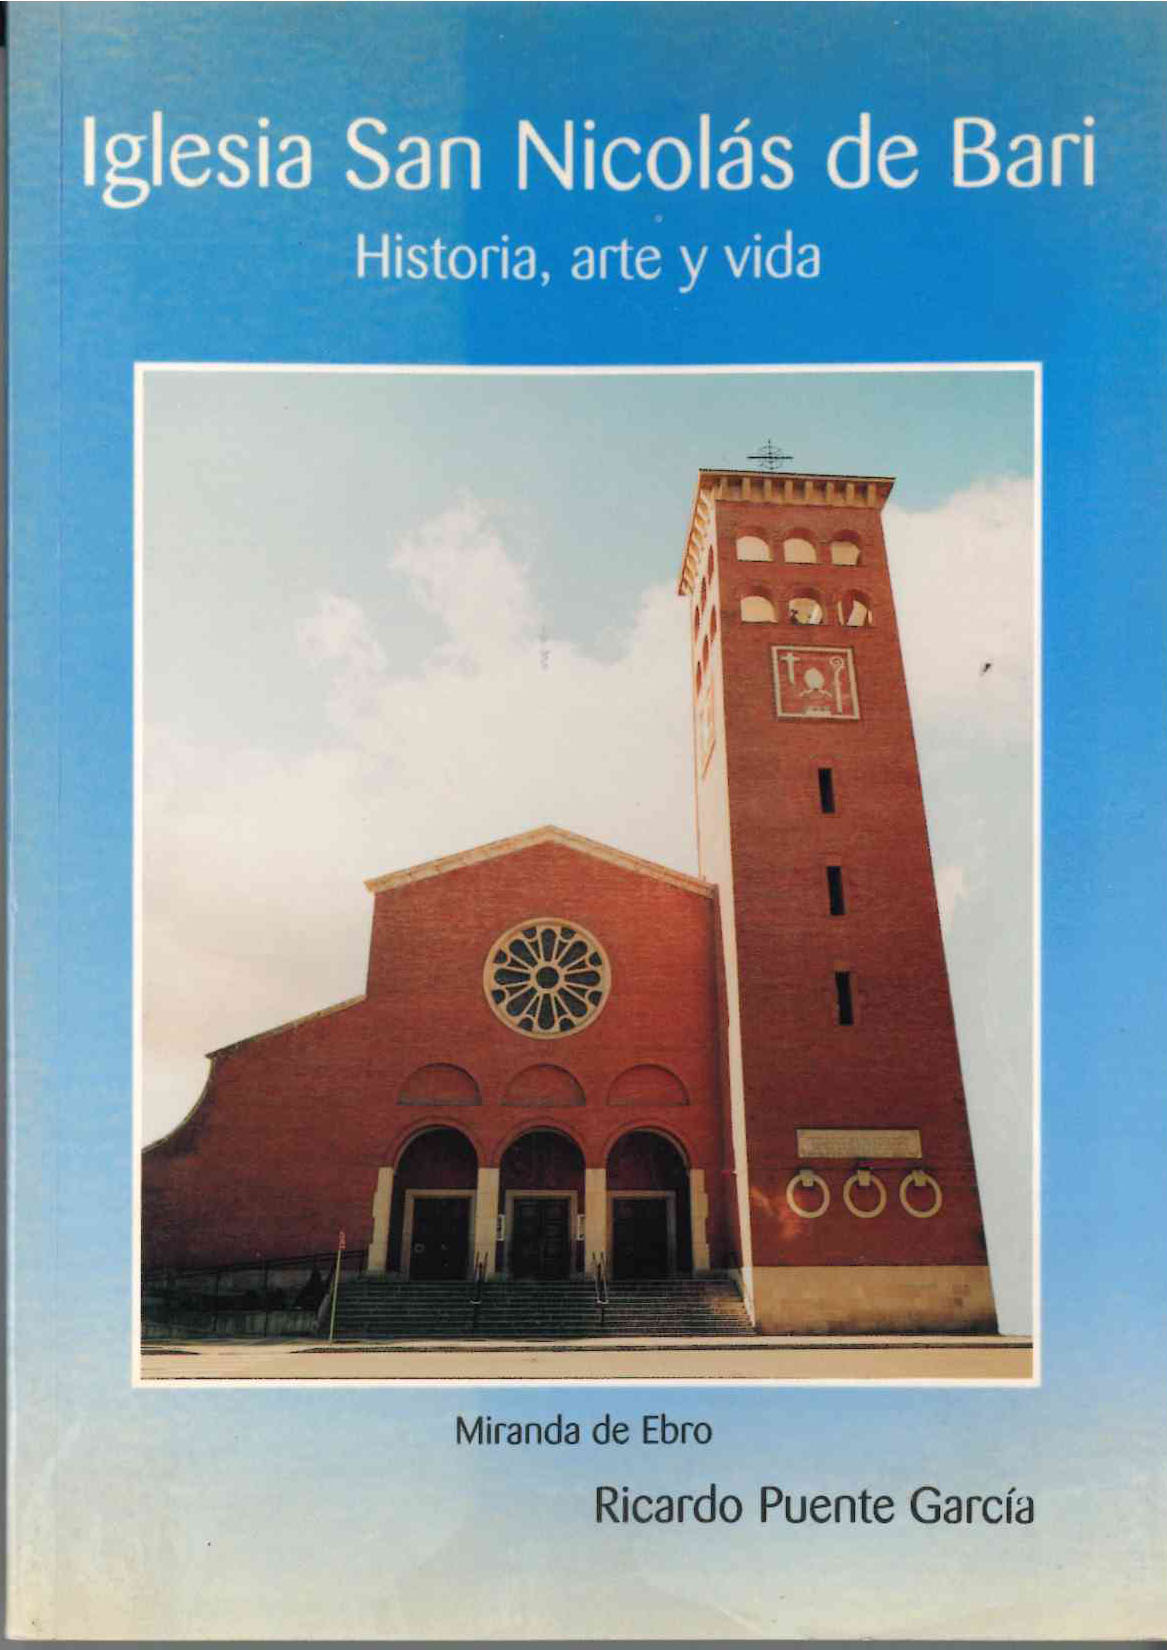 Ricardo Puente García. Iglesia San Nicolás de Bari. Historia, arte y vida. Miranda de Ebro